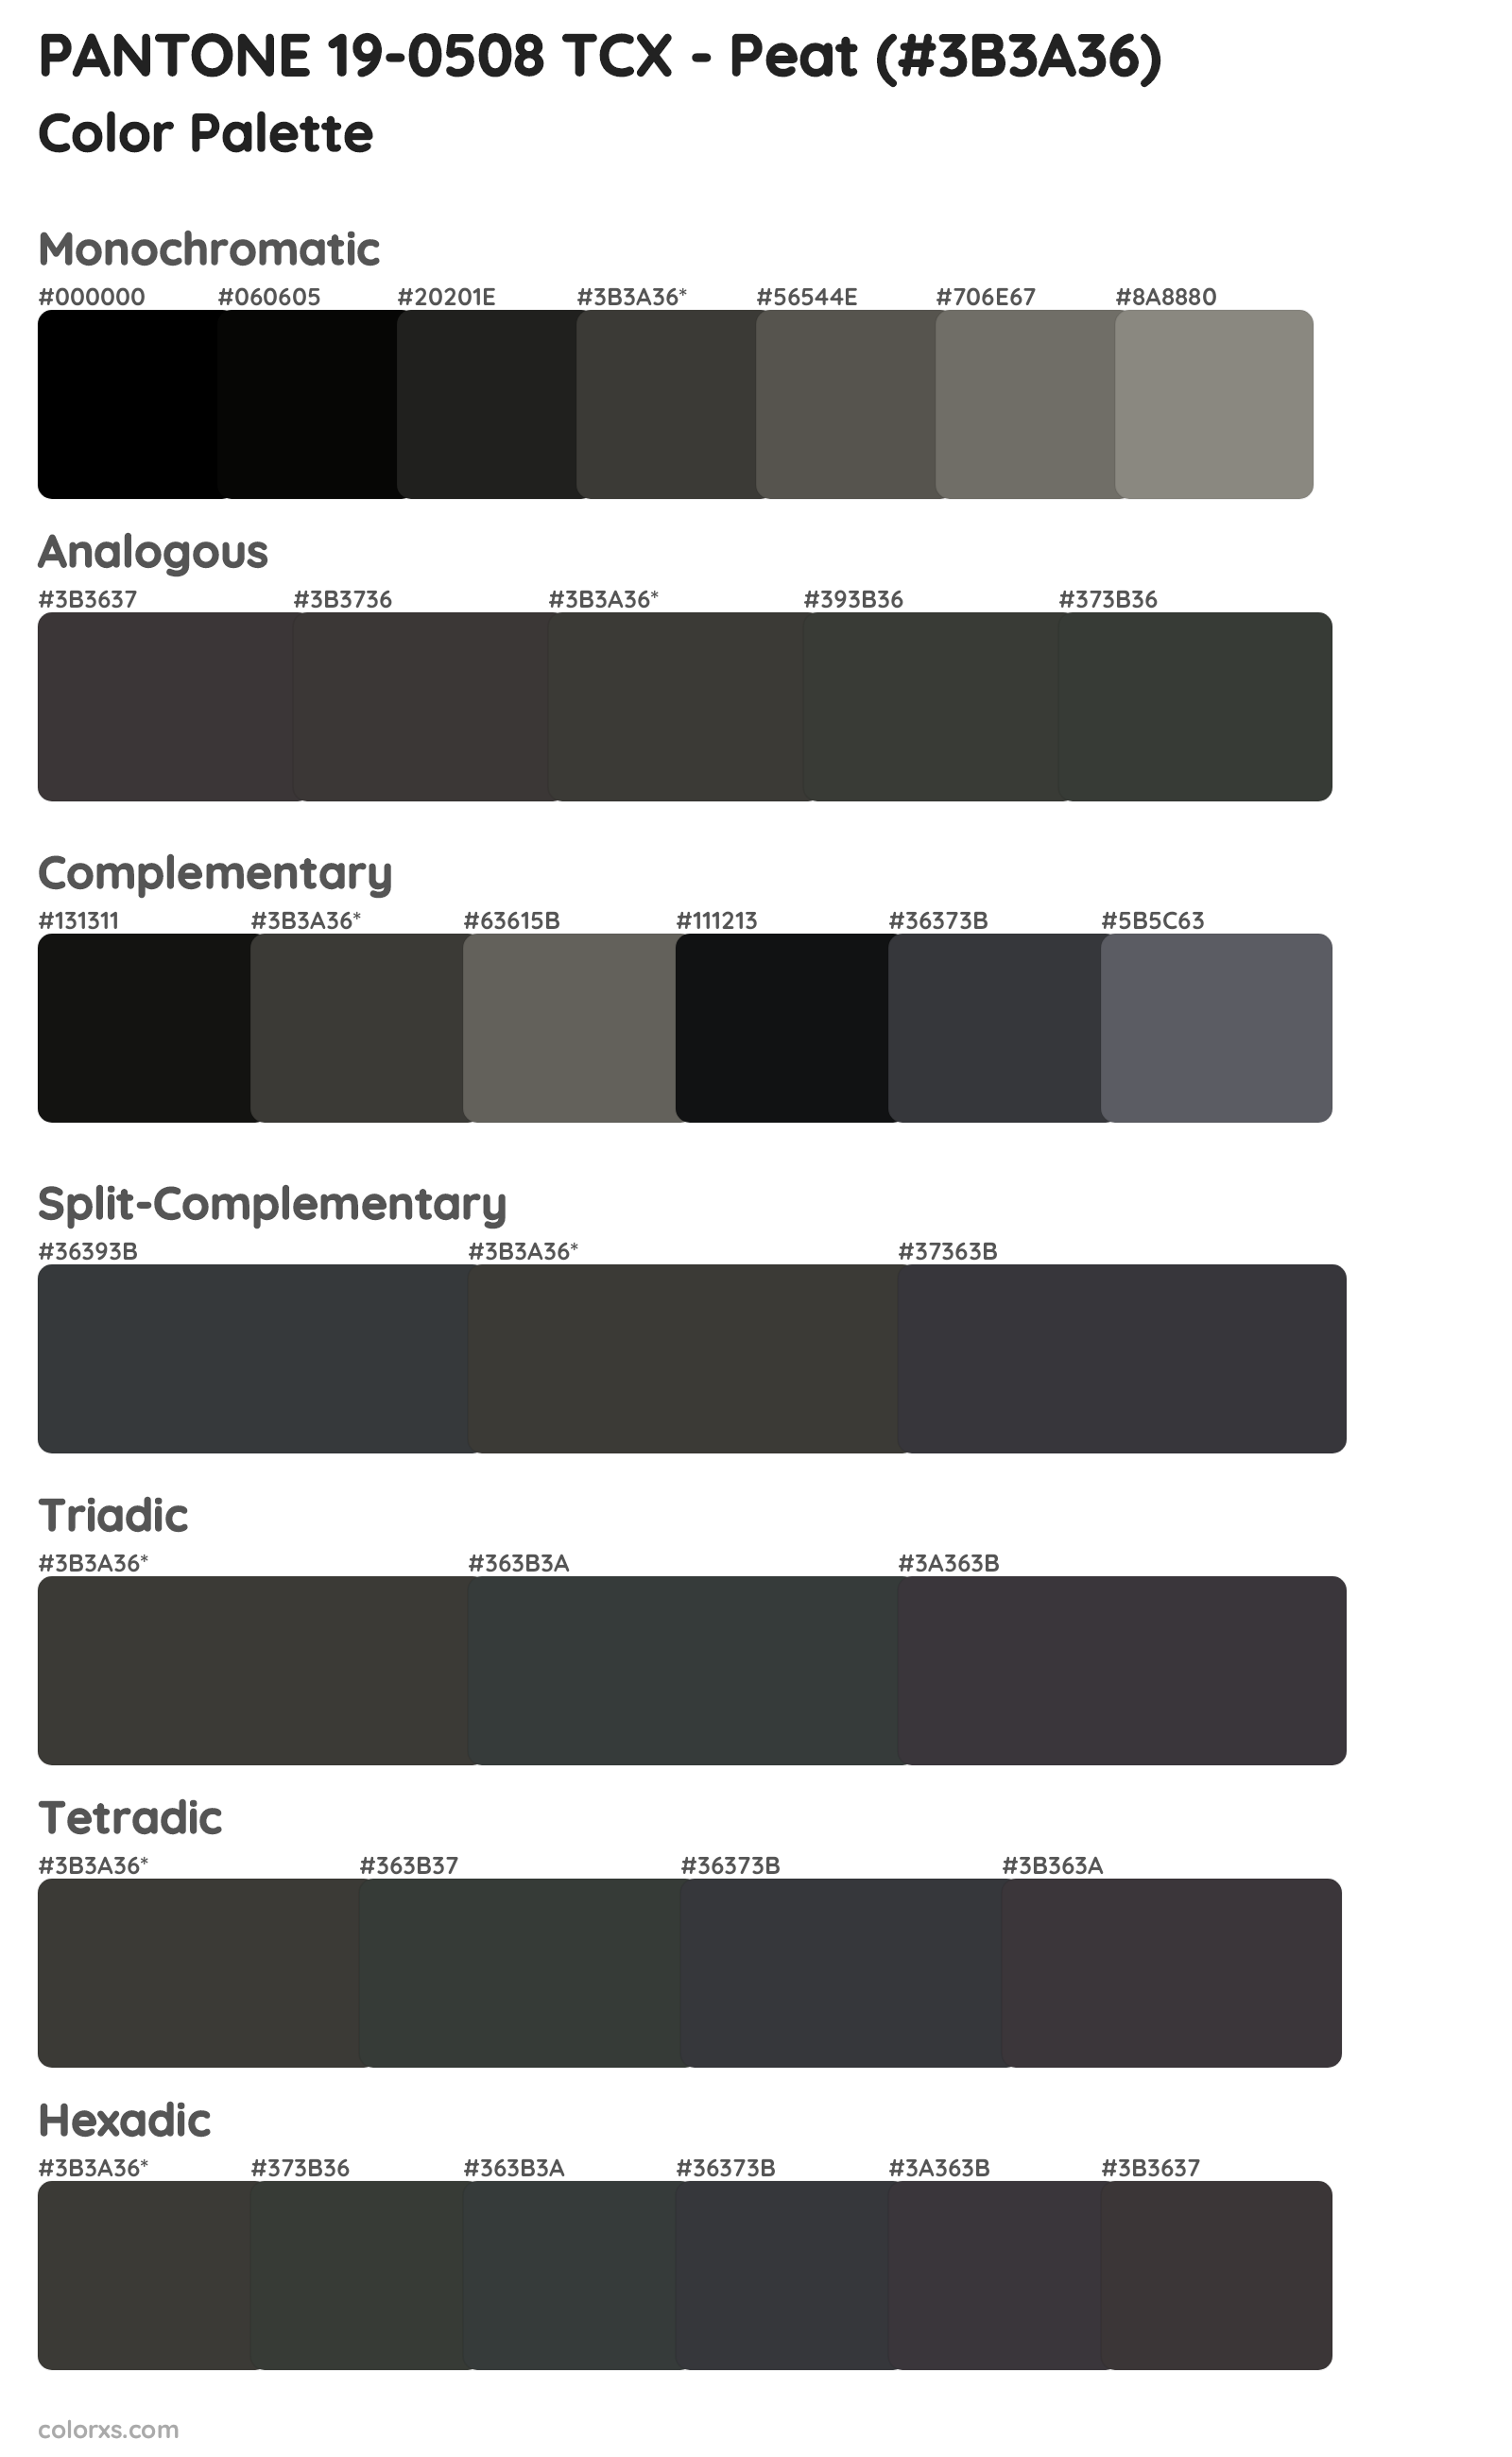 PANTONE 19-0508 TCX - Peat Color Scheme Palettes